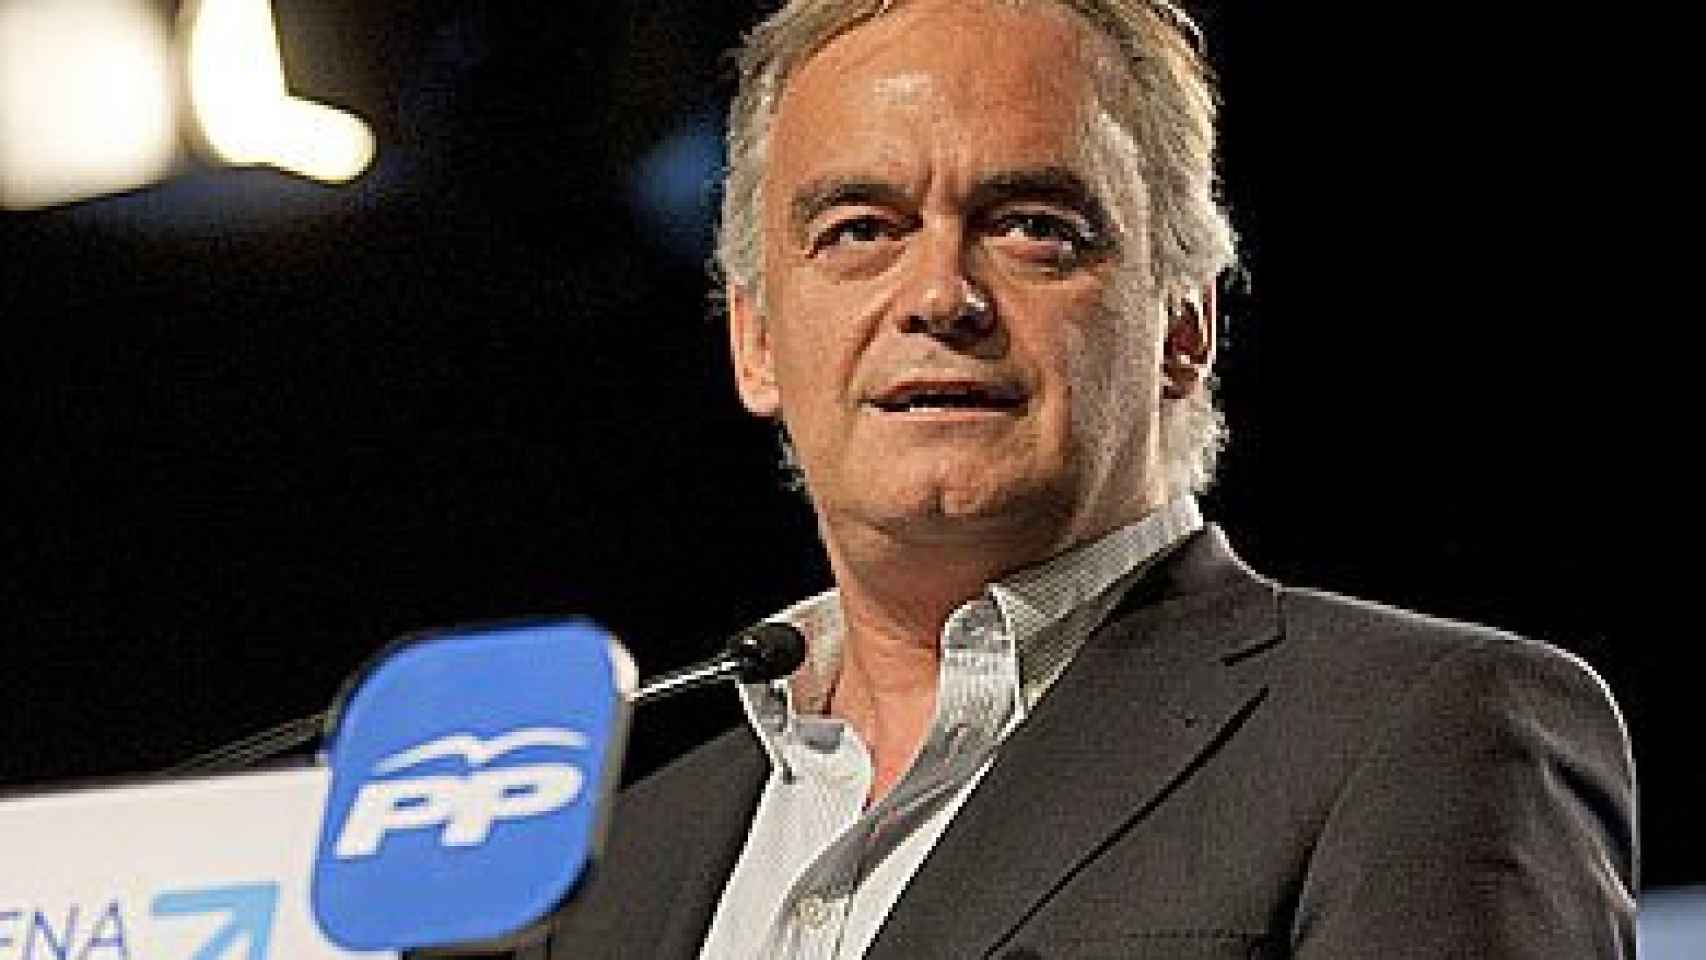 El secretario de Estudios y Programas del PP y eurodiputado, Esteban González Pons